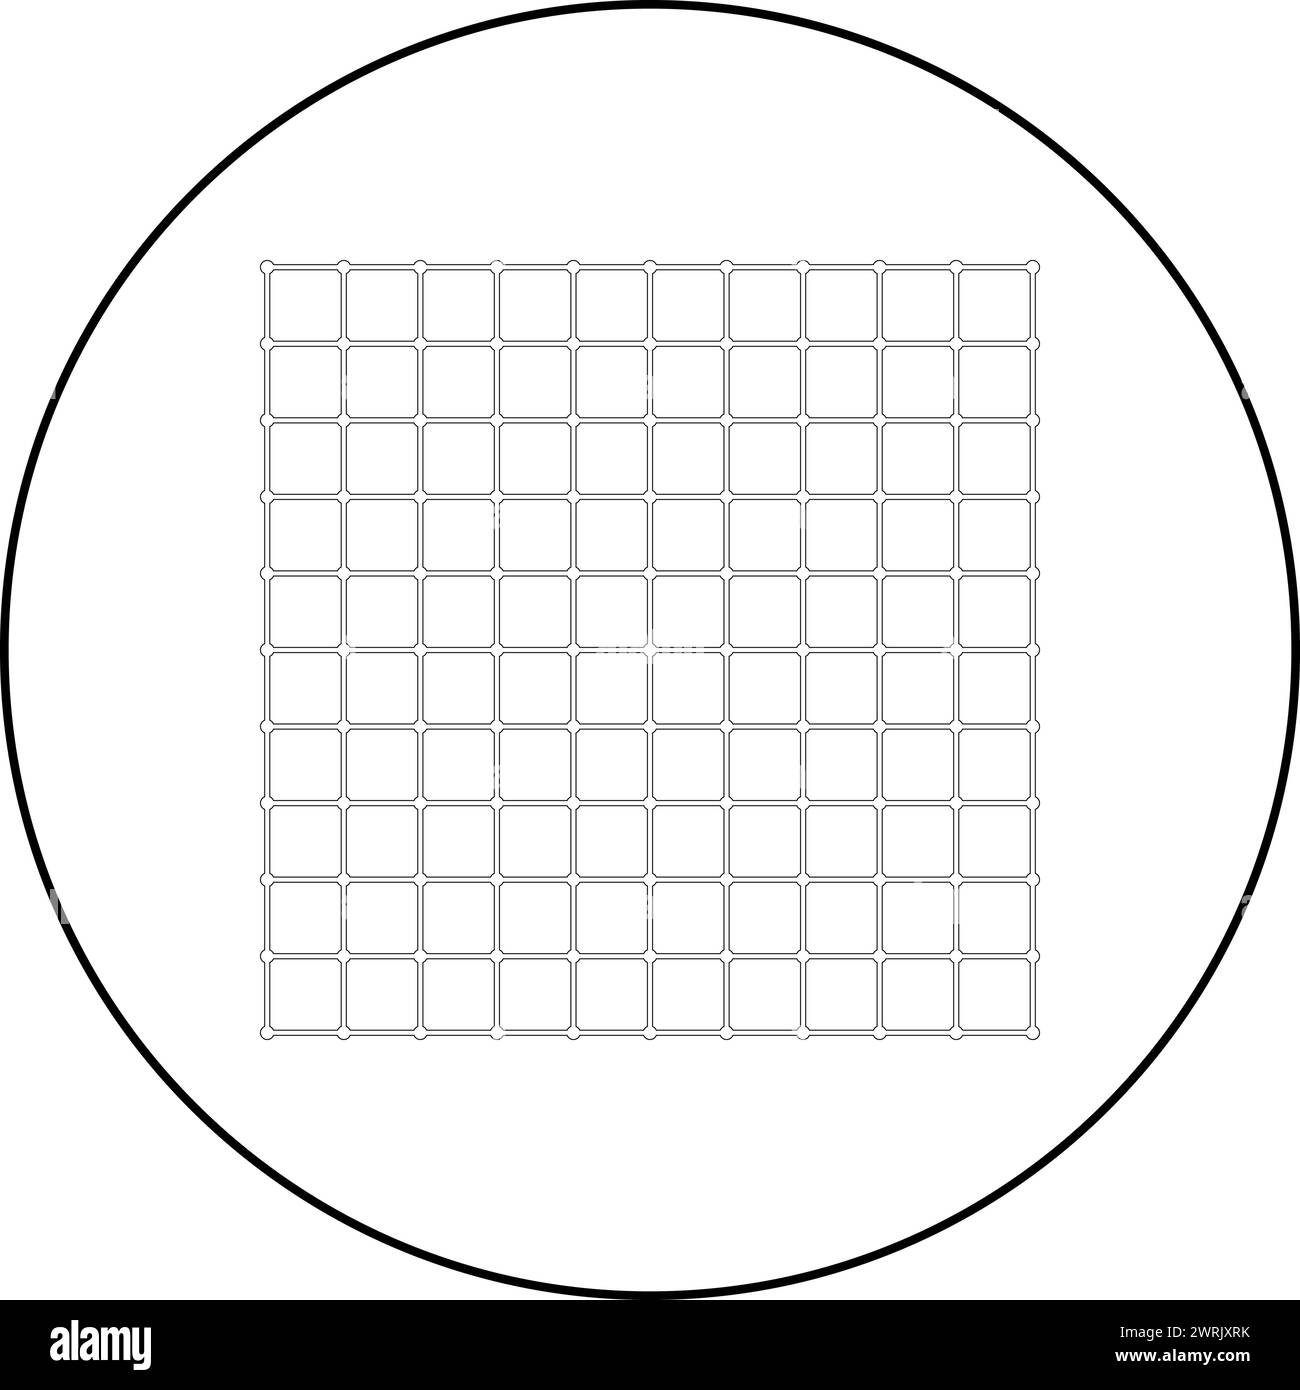 Icona a scacchi con griglia quadrata in cerchio, colore nero, illustrazione vettoriale, contorno immagine, linea di contorno, stile sottile semplice Illustrazione Vettoriale